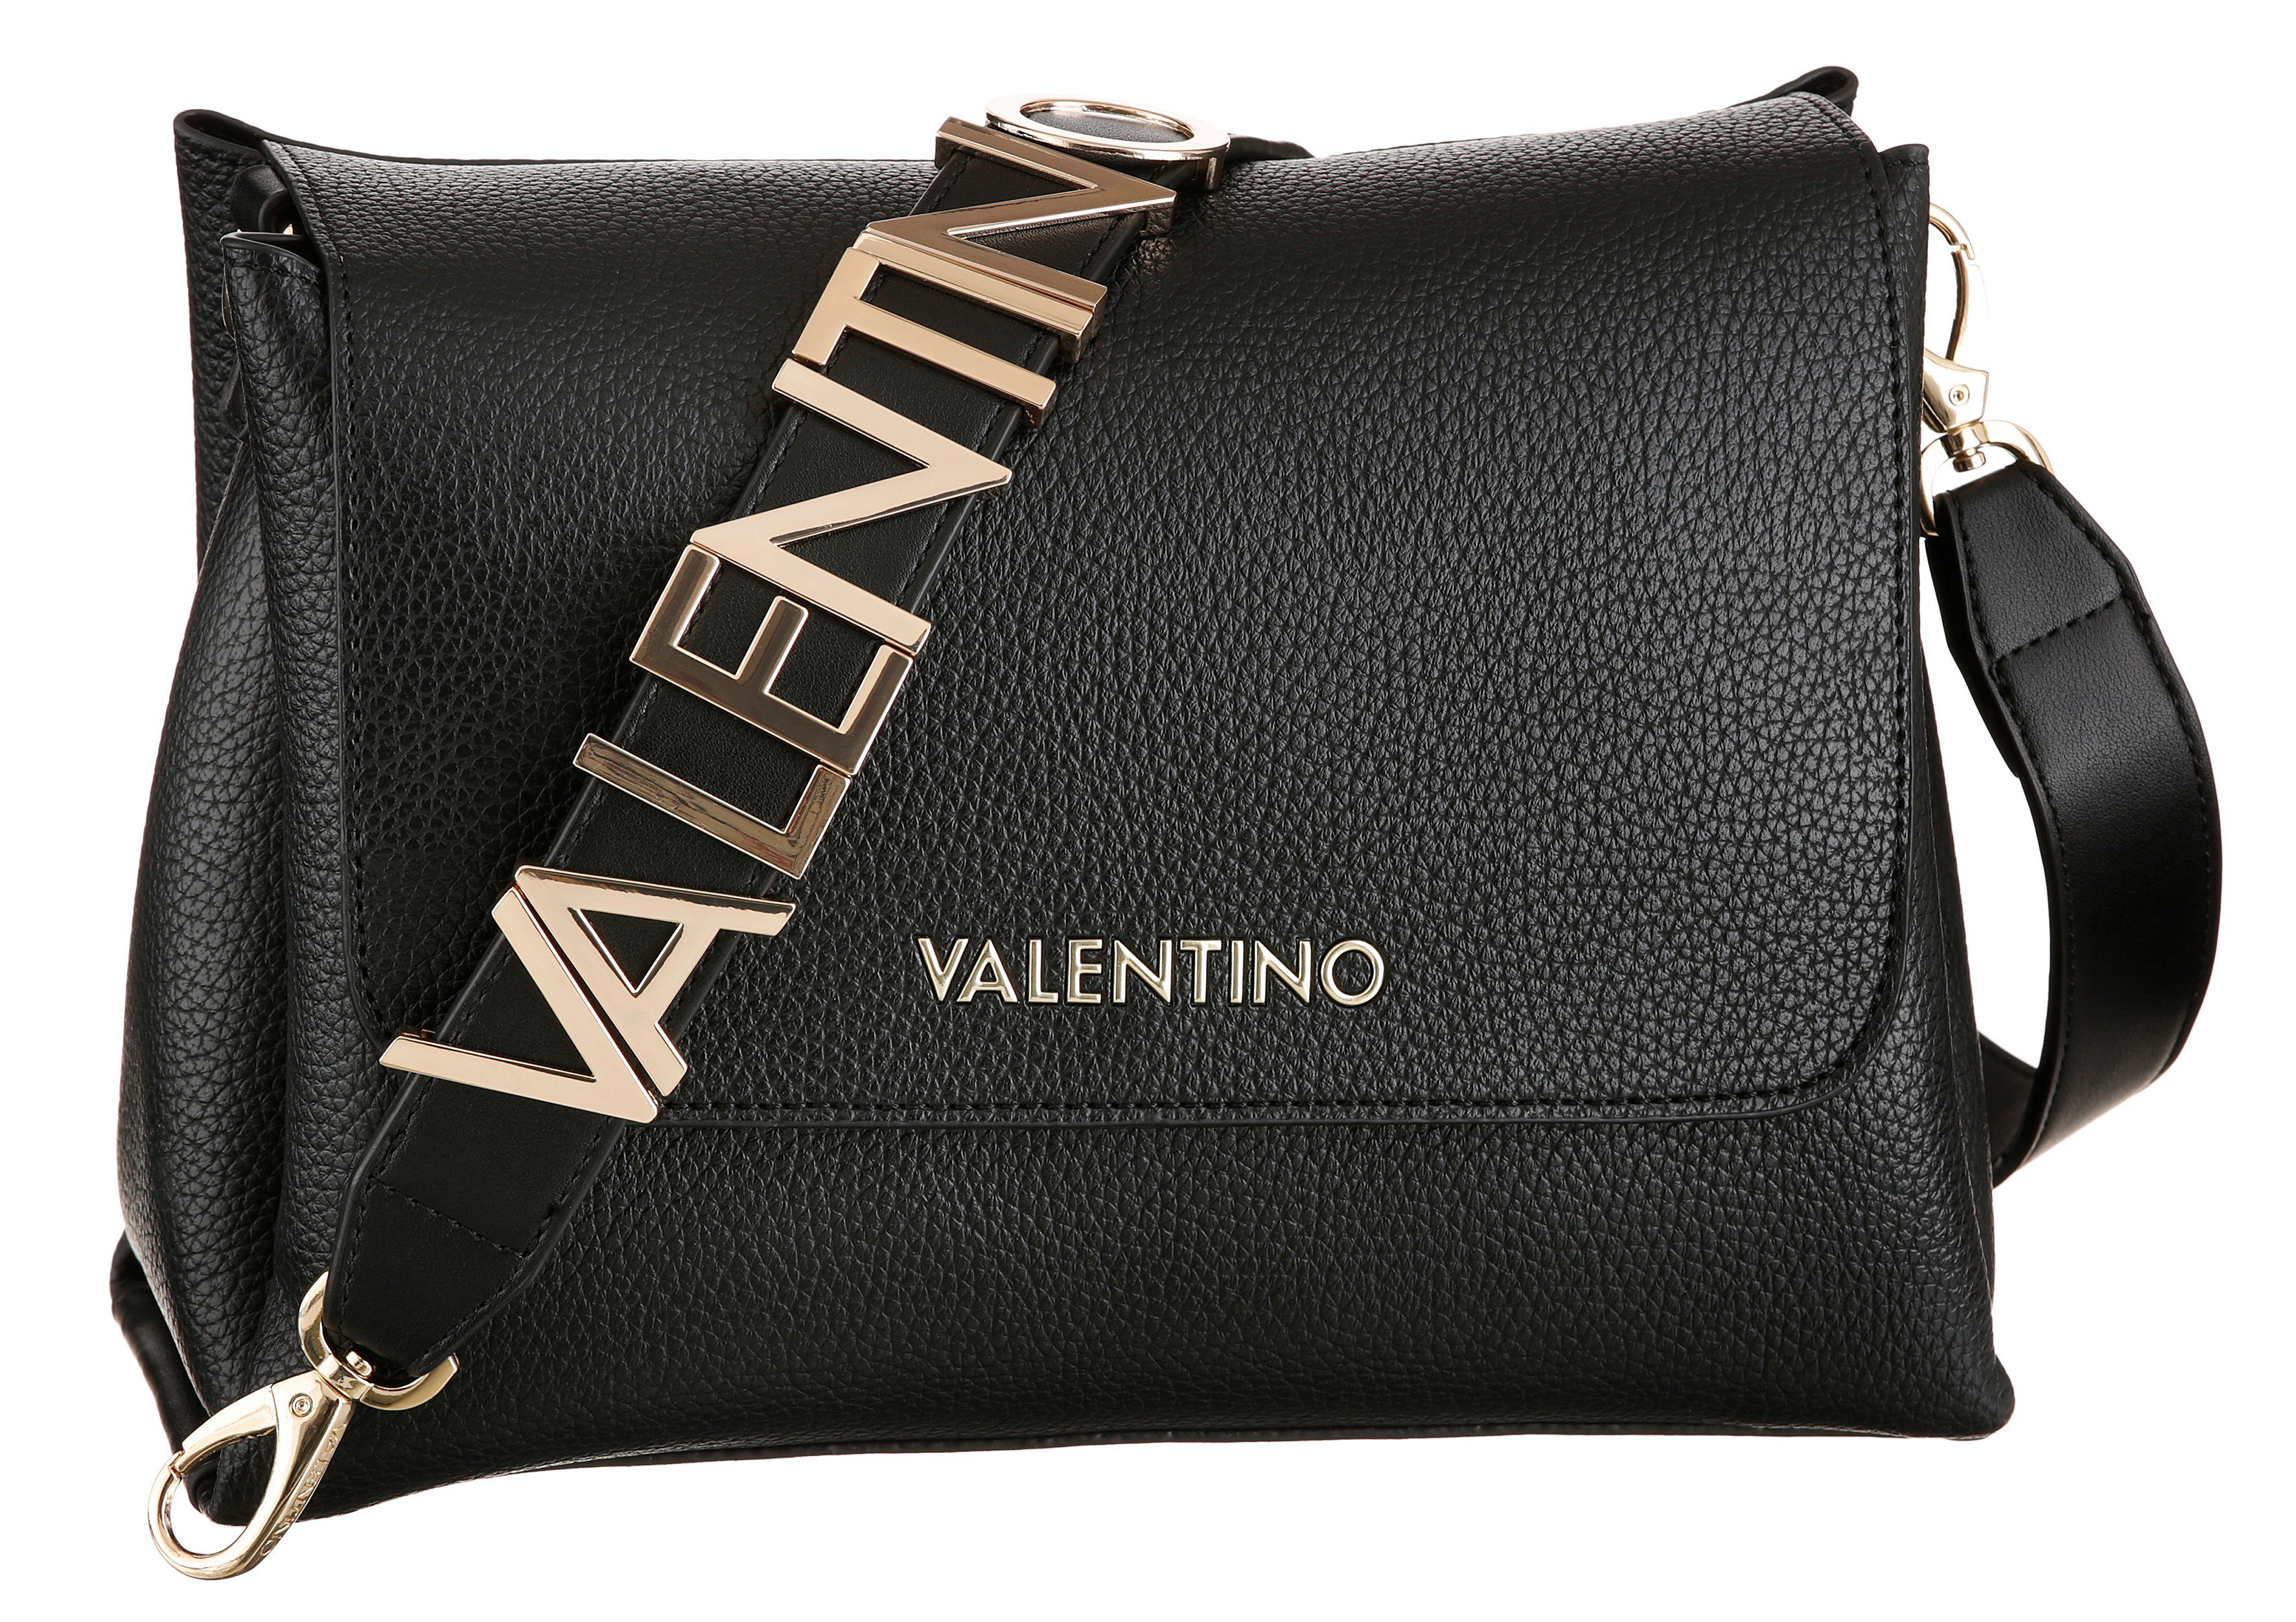 Valentino Damen Handtaschen online kaufen | OTTO